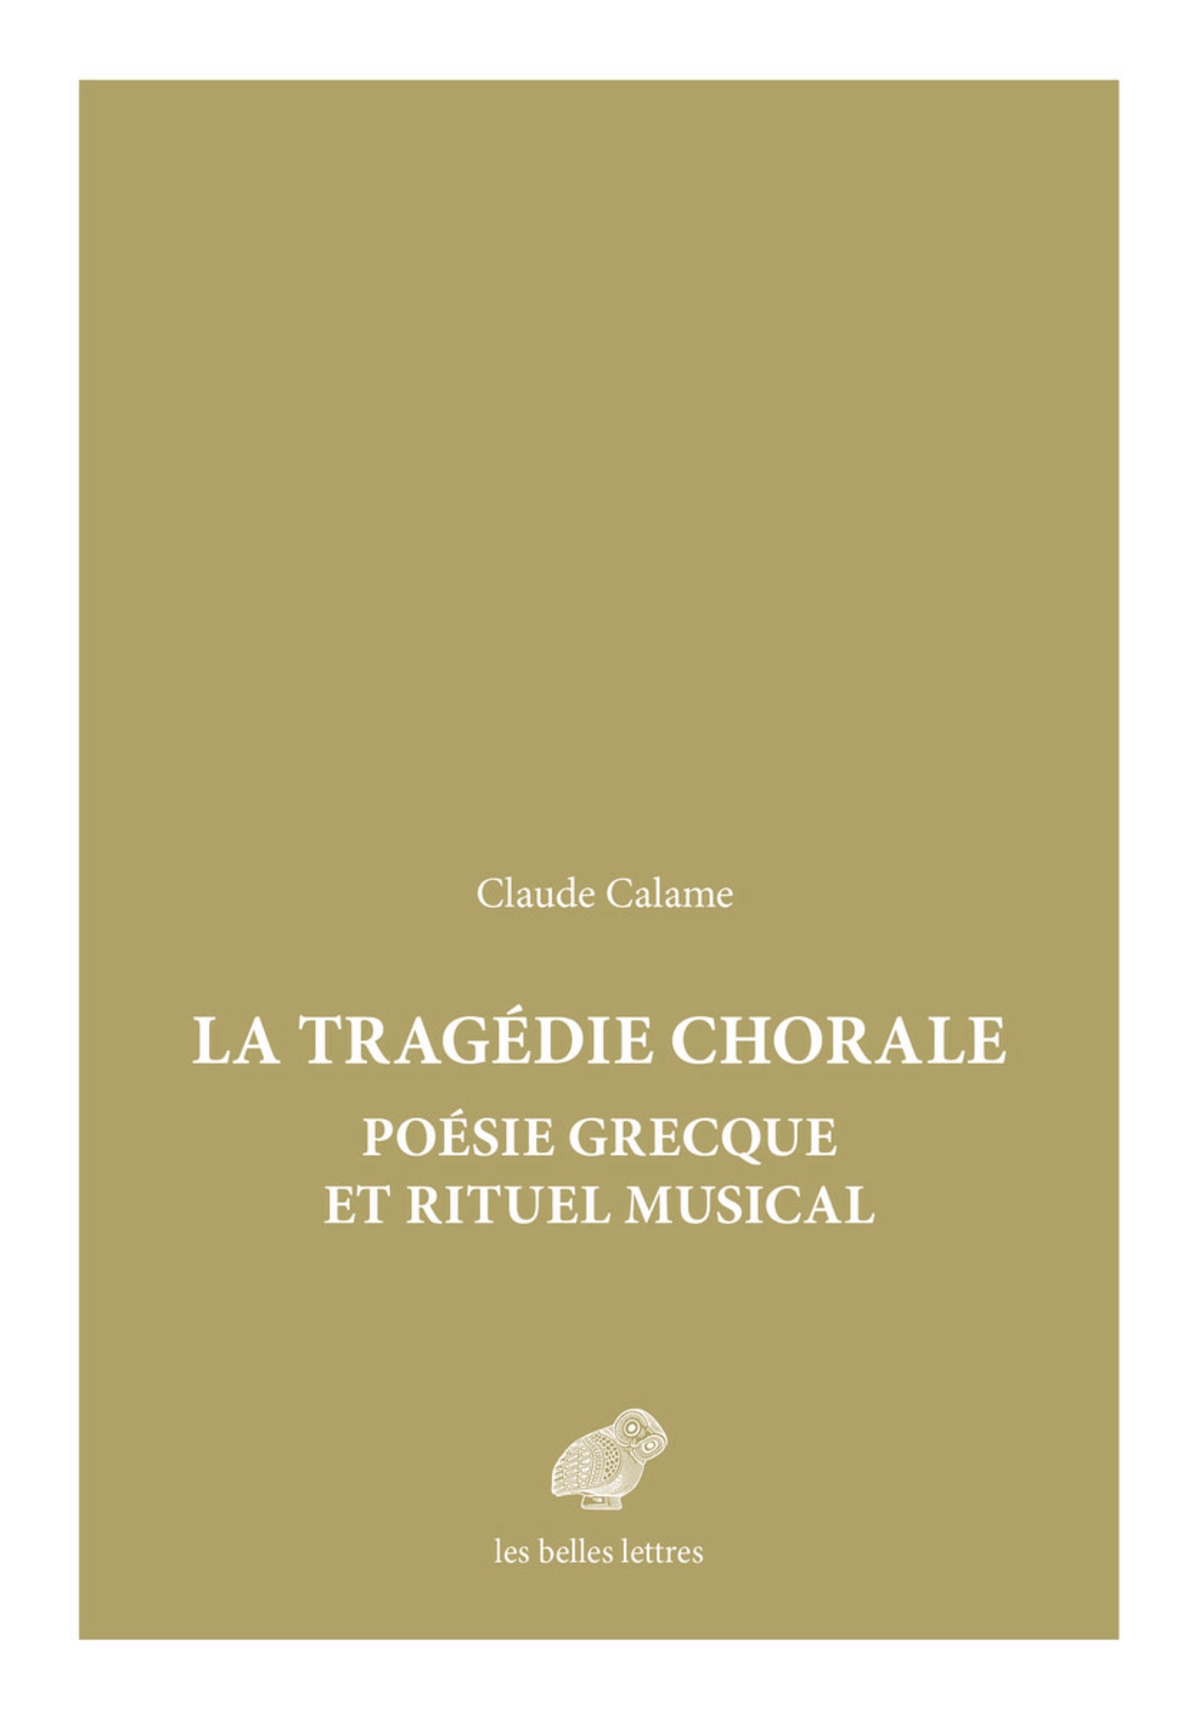 Tragédie chorale : poésie grecque et rituel musical